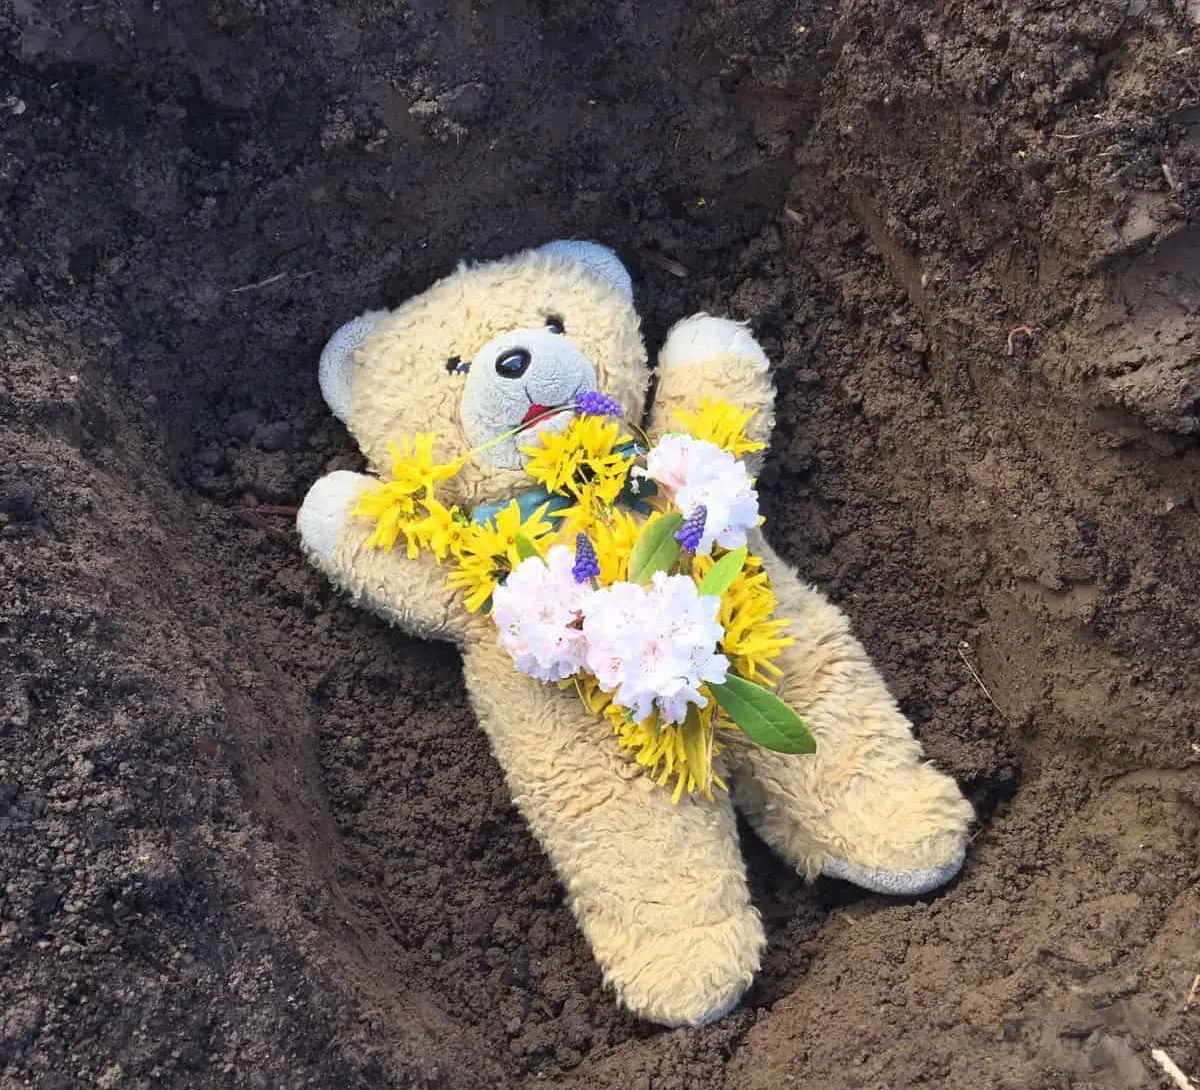 Adieu, Teddy - du wirst auf ewig in seines Herzen Innerem weilen.